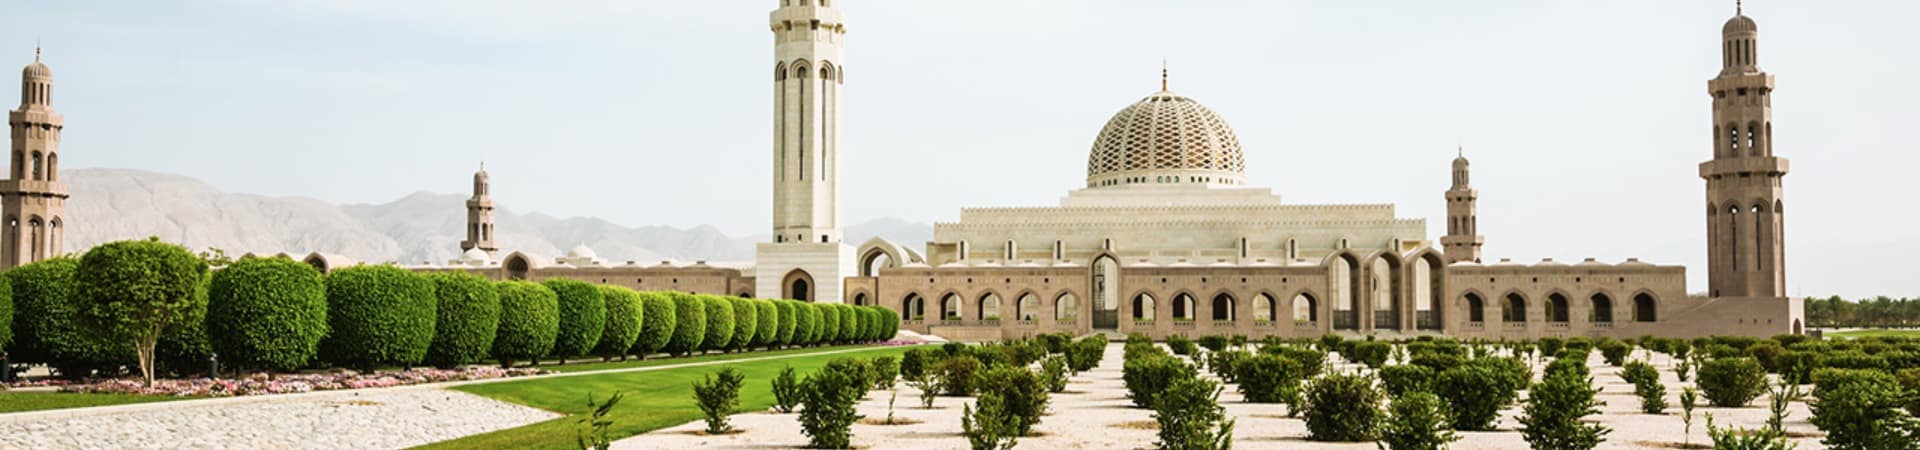 Muscat grande mesquita do sult o qaboos em om